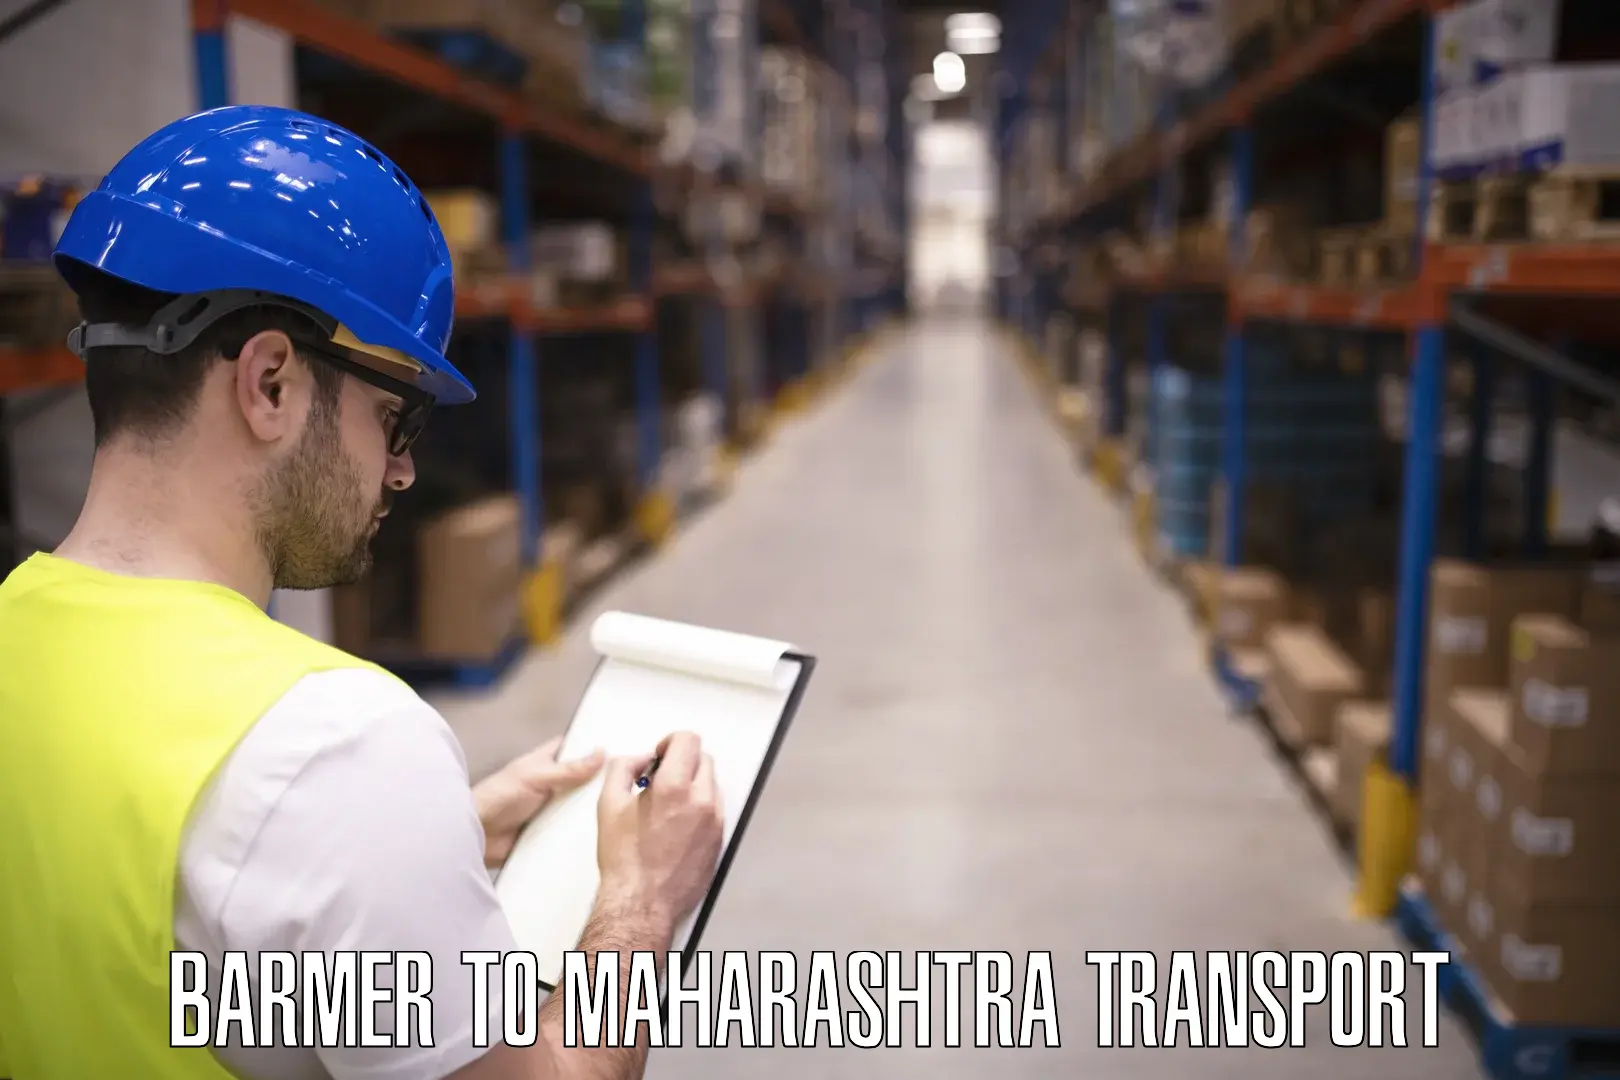 Daily parcel service transport Barmer to Maharashtra